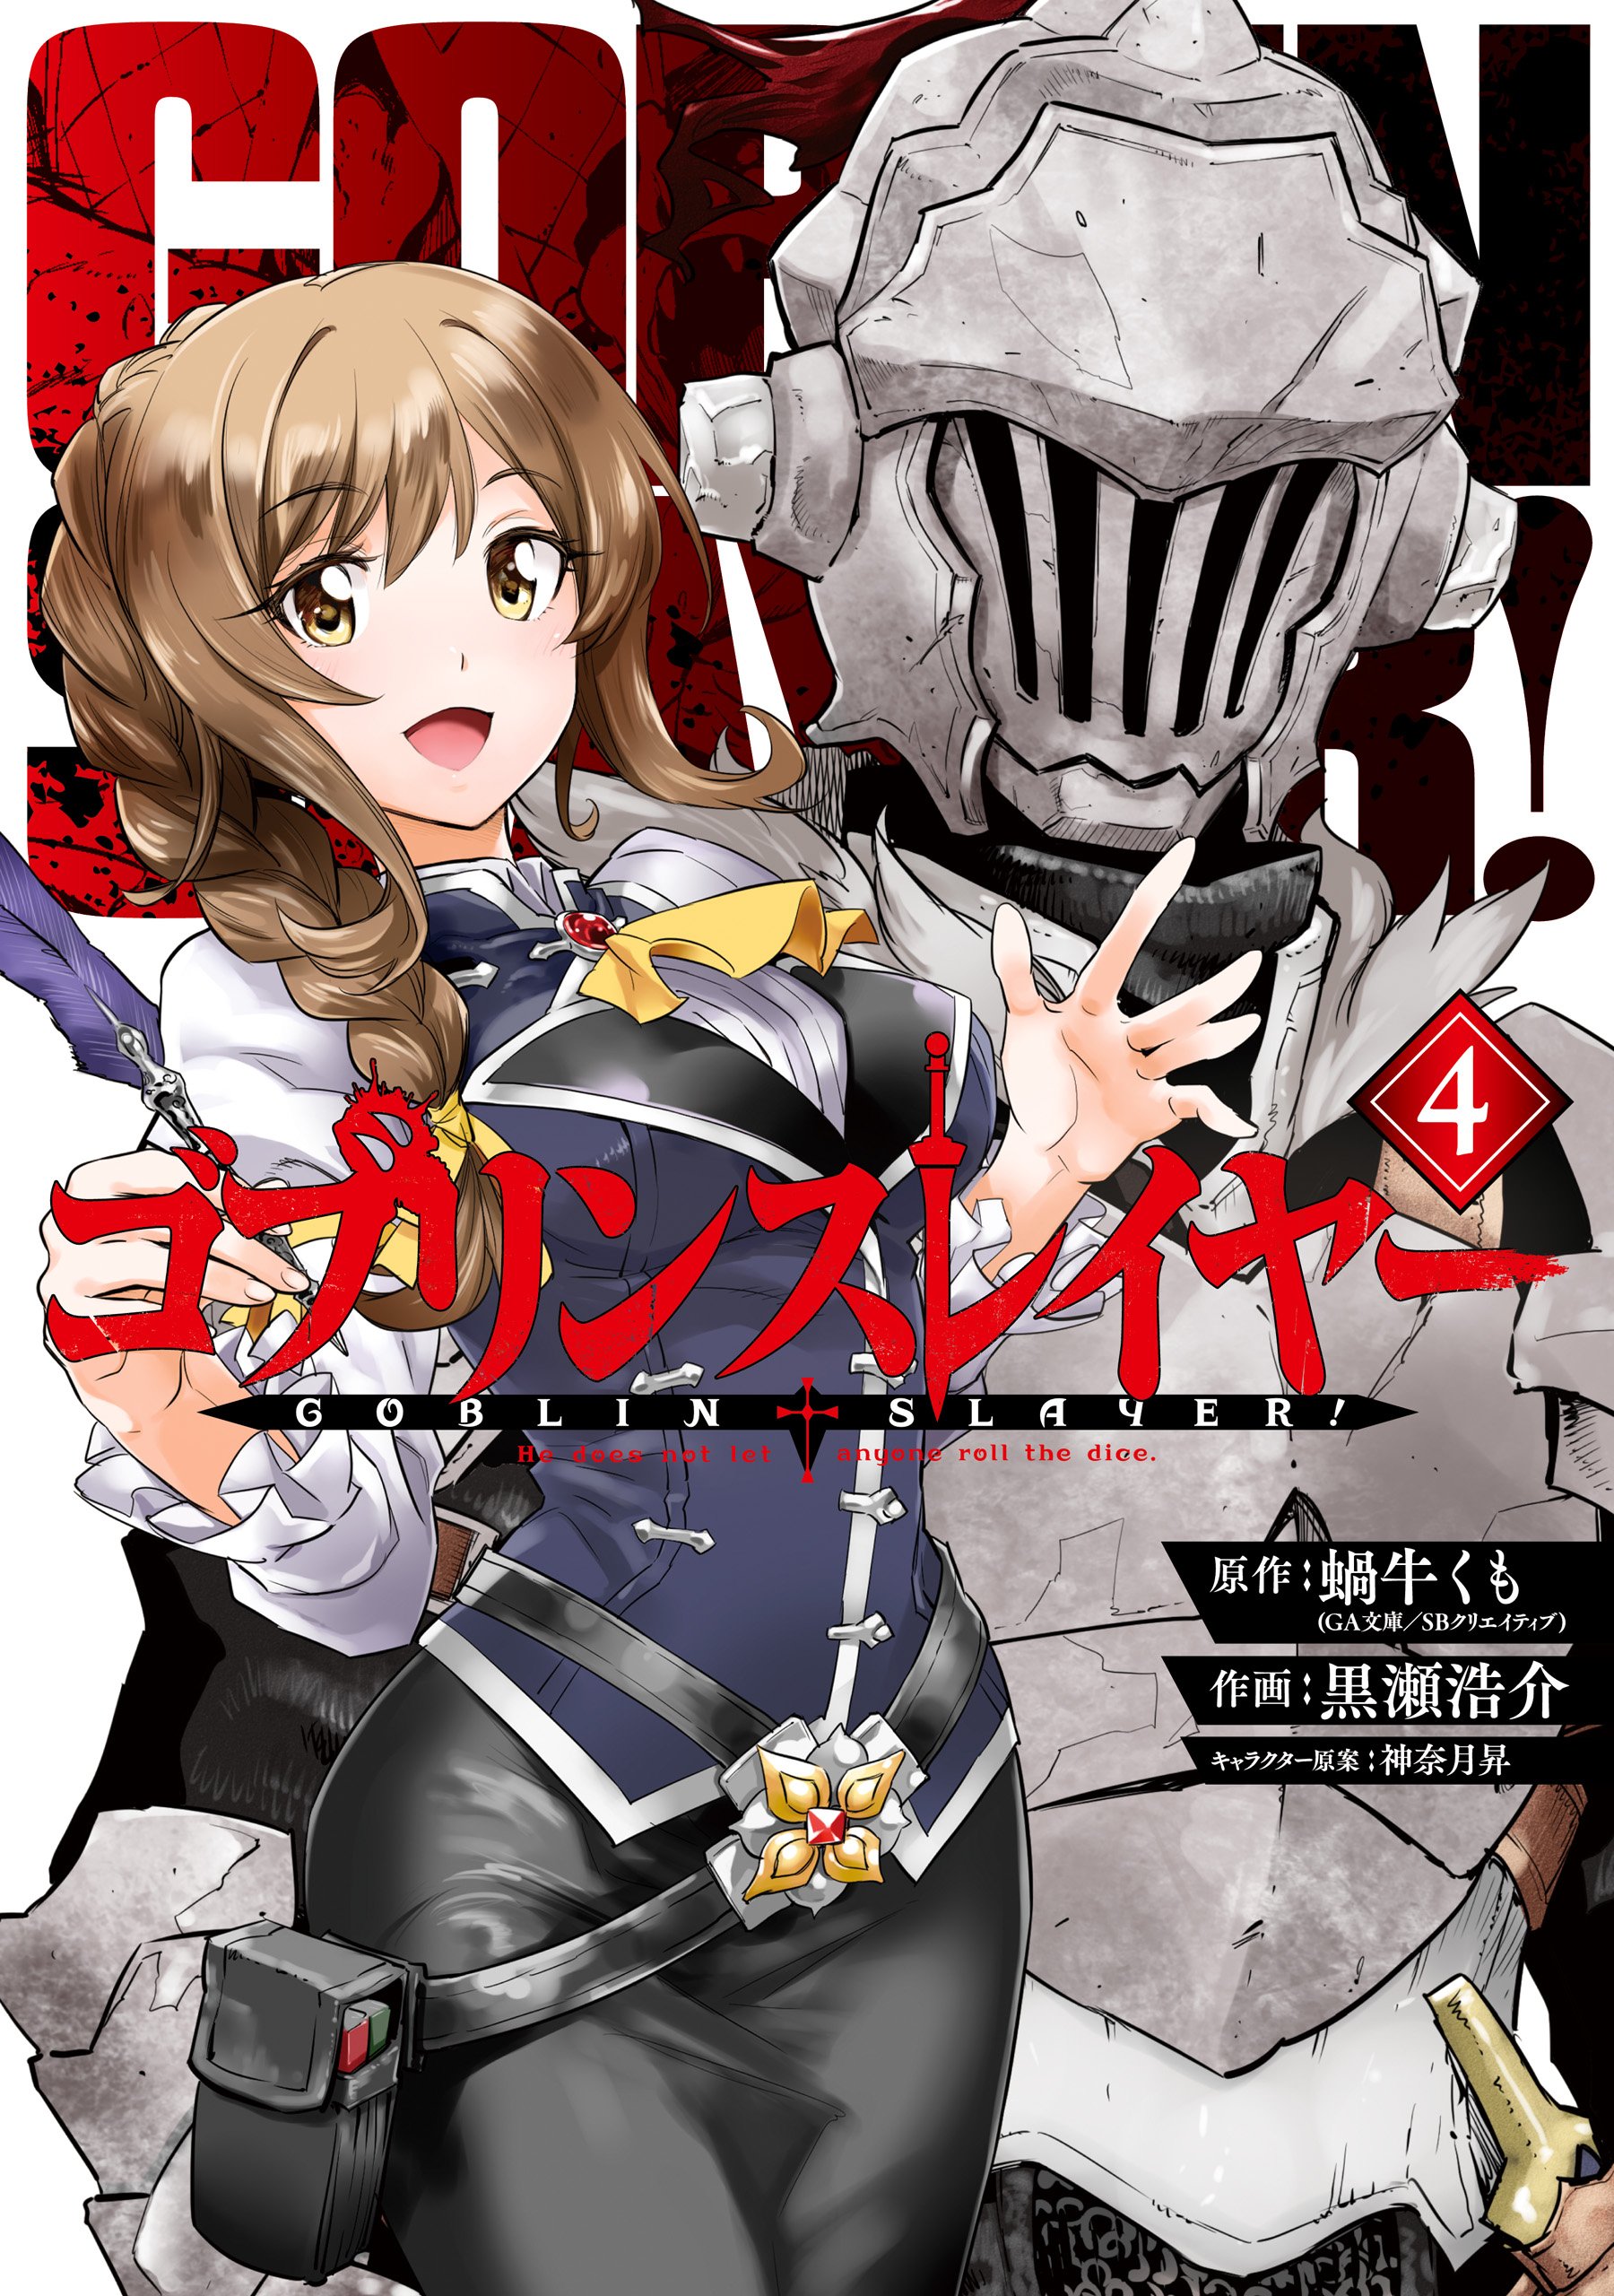 Light Novel Volume 8, Goblin Slayer Wiki